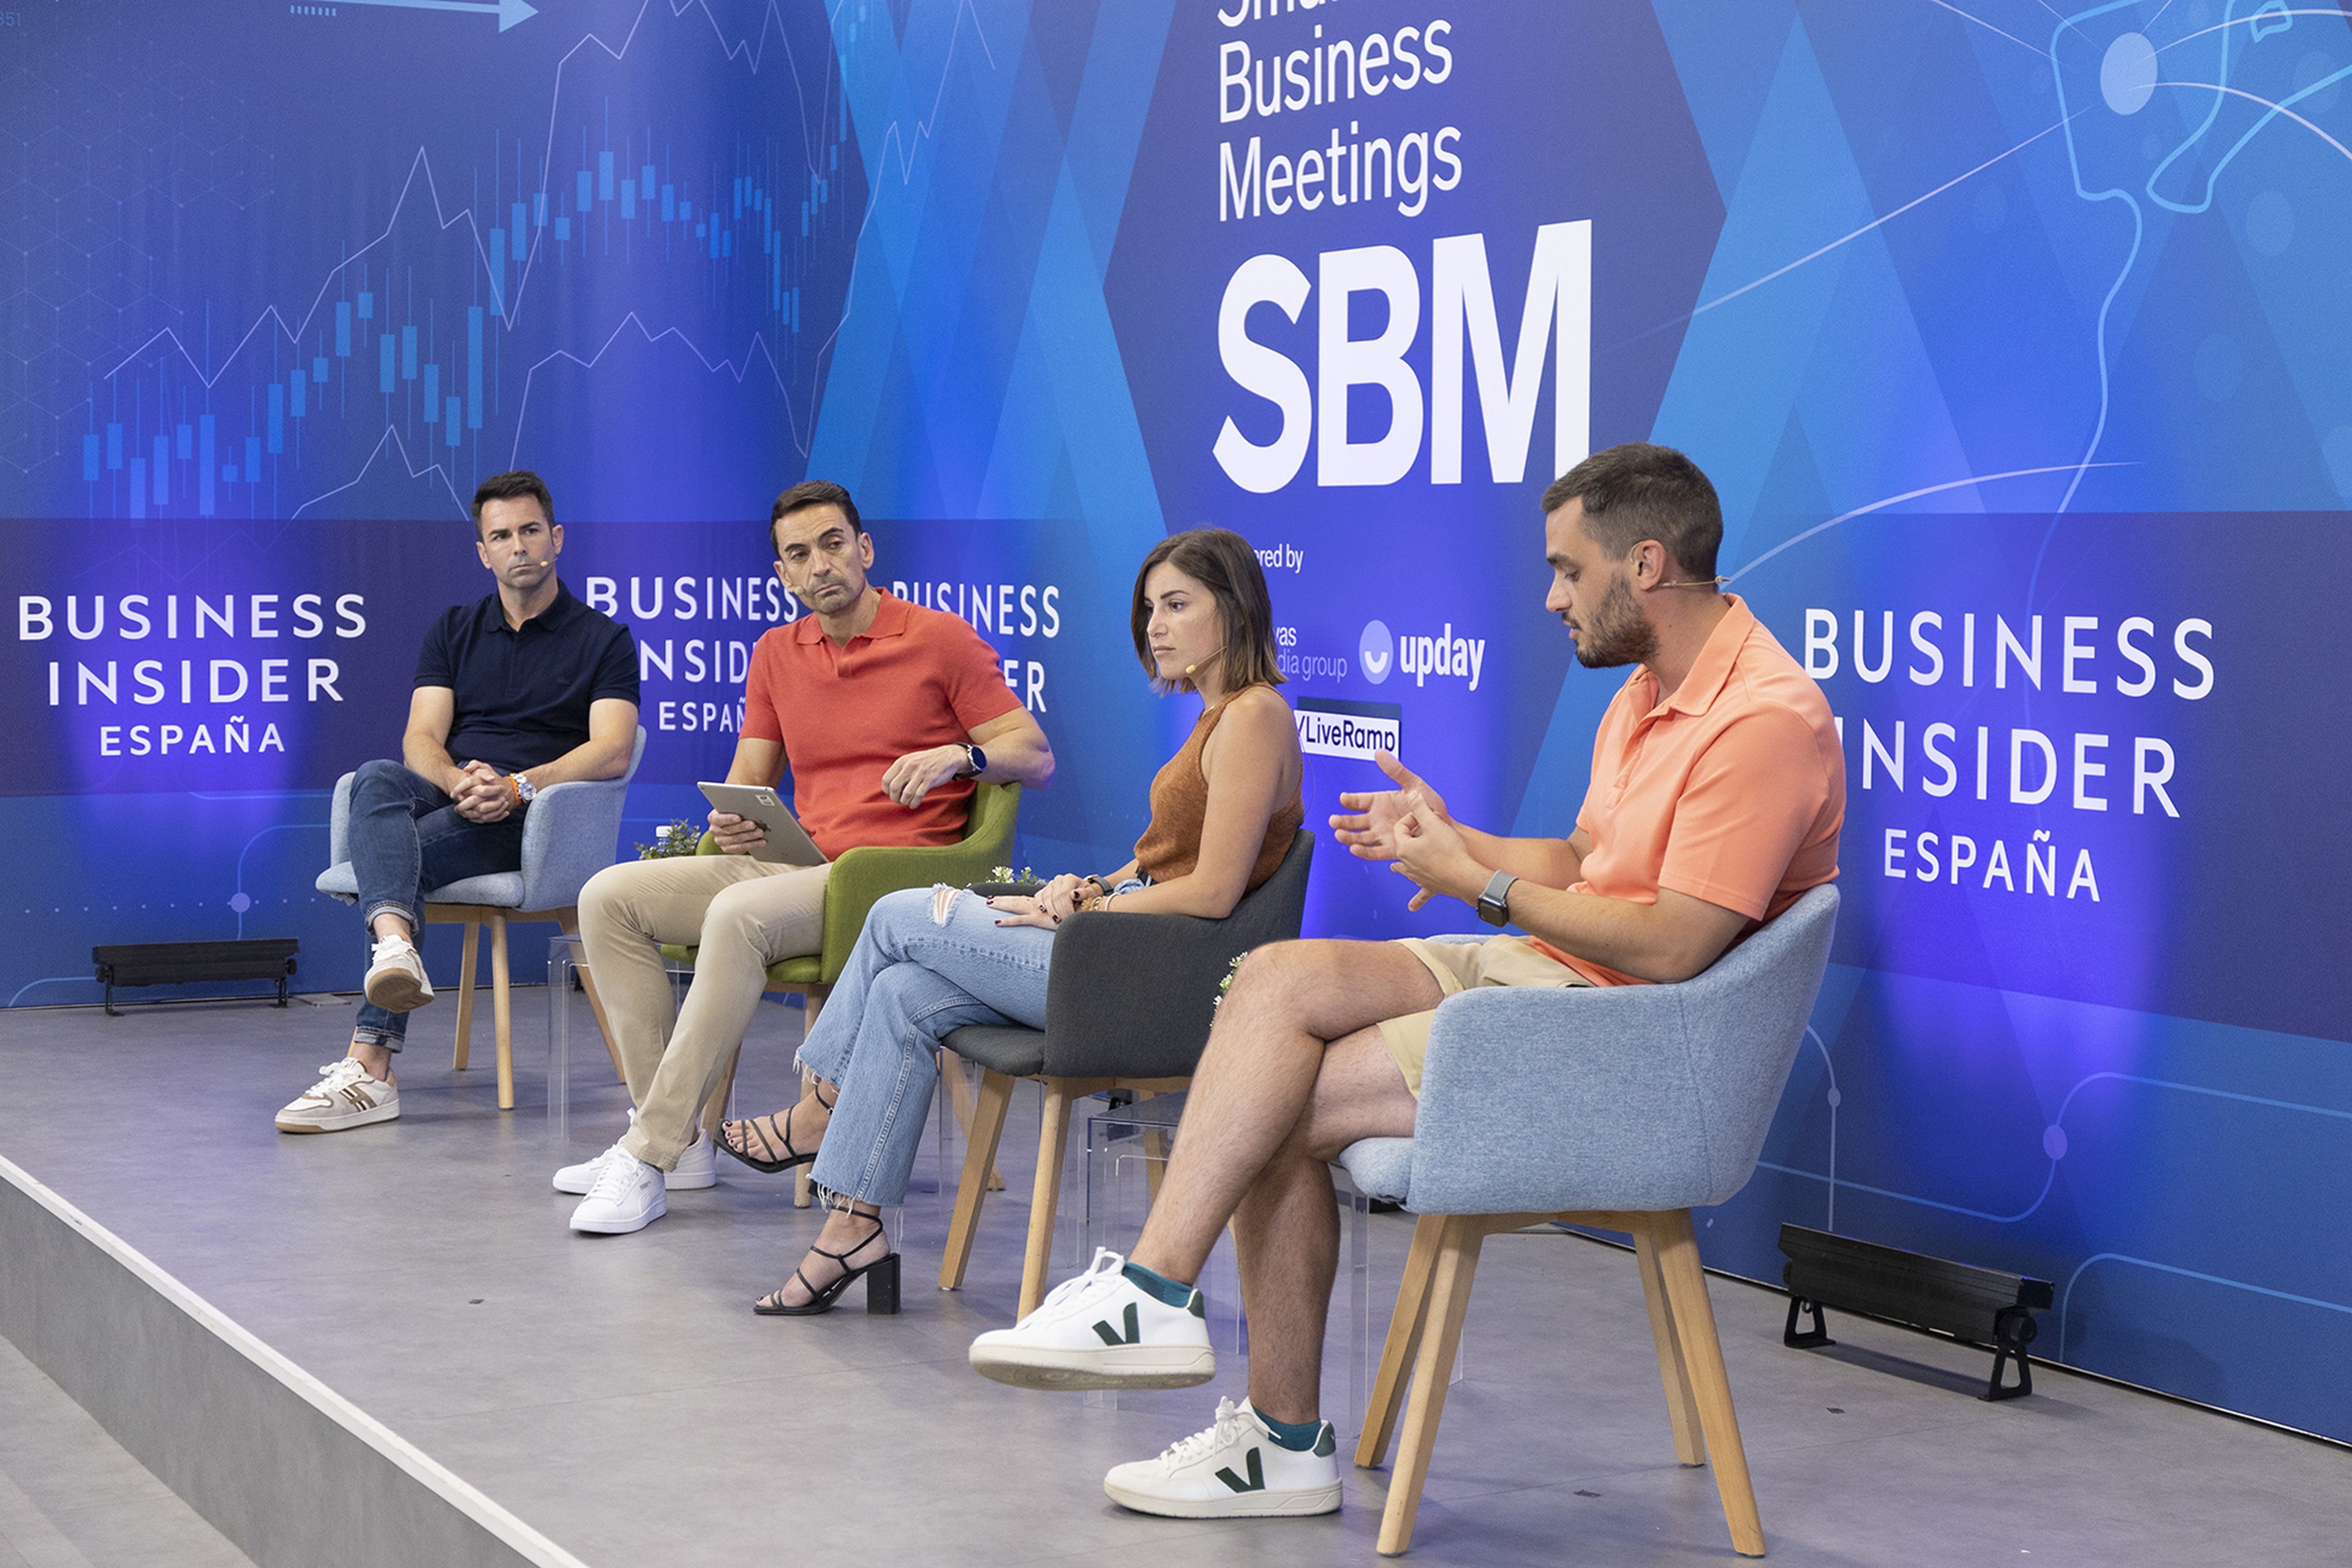 De izquierda a derecha, Fran Marchena, CEO de HOFF; Manuel del Campo, CEO de Axel Springer España; Marta Frenna, CEO de GreyHounders; y Federico Sainz de Robles, CEO de Sepiia.